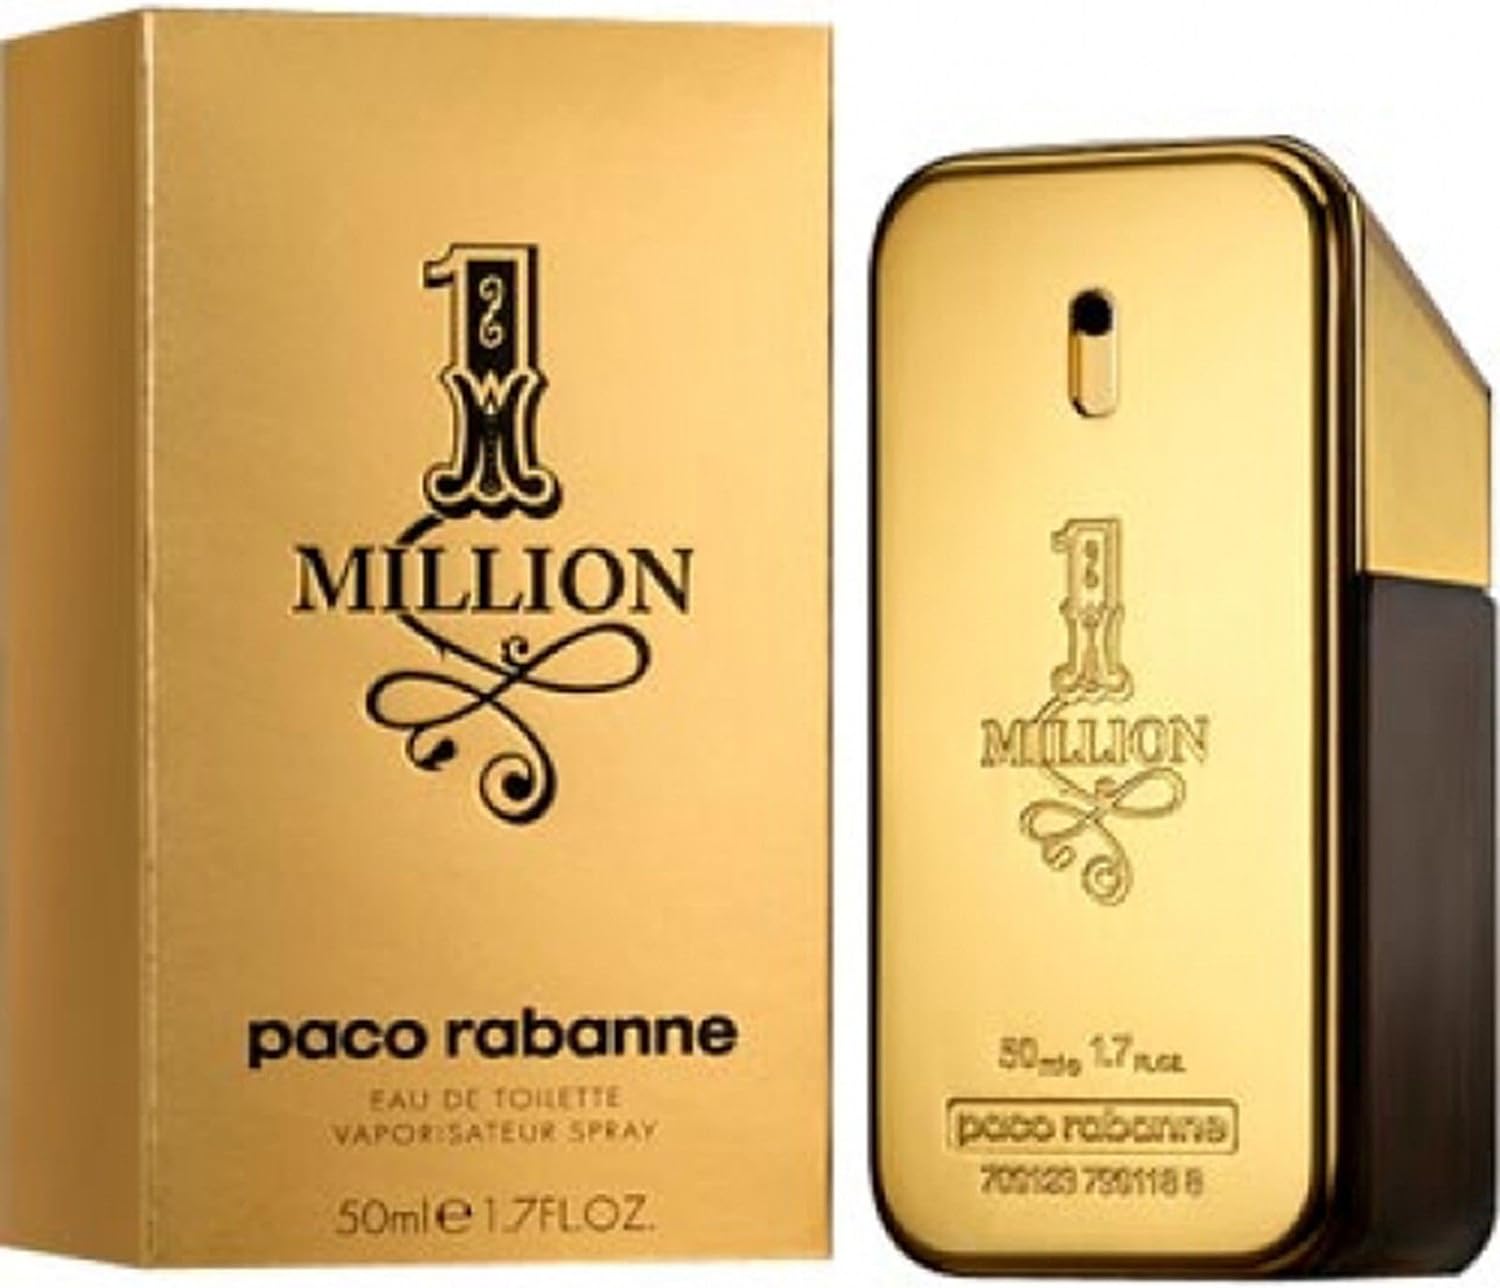 <strong>1 Million de Paco Rabanne</strong> : une Fragrance Luxueuse qui Incarne le Succès